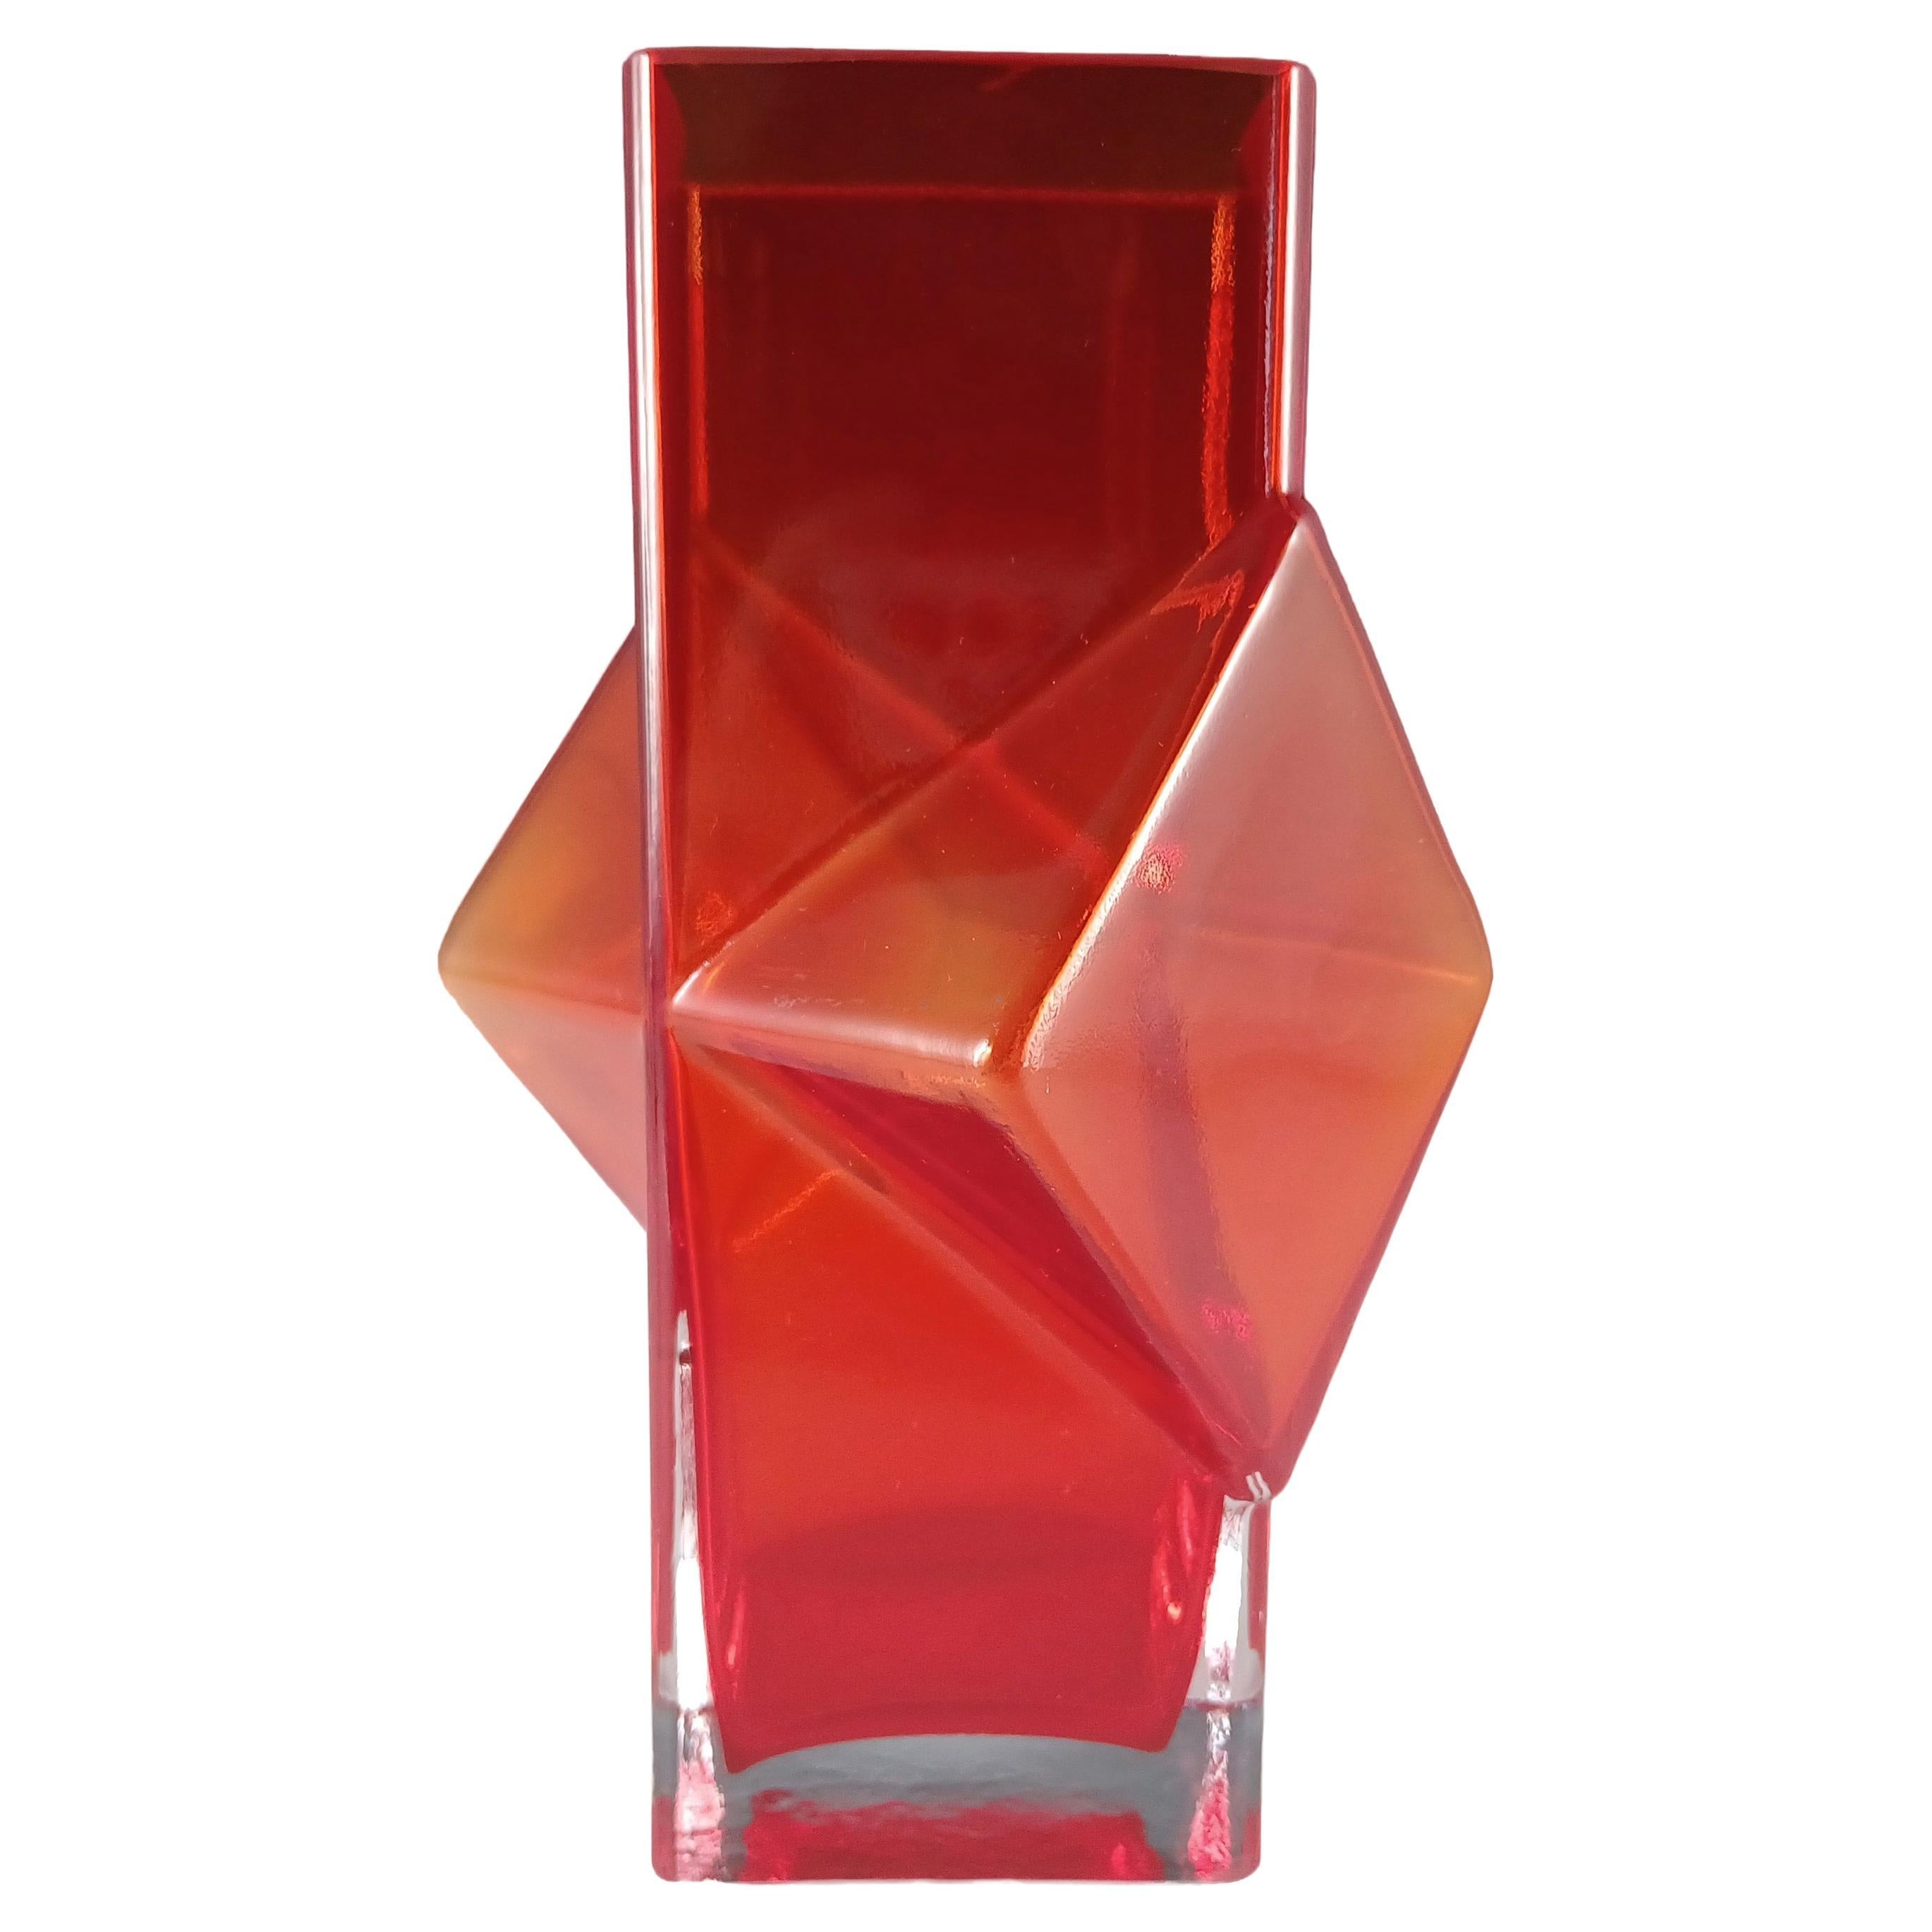 Riihimaki #1388 Erkkitapio Siiroinen Red Glass Pablo Vase For Sale